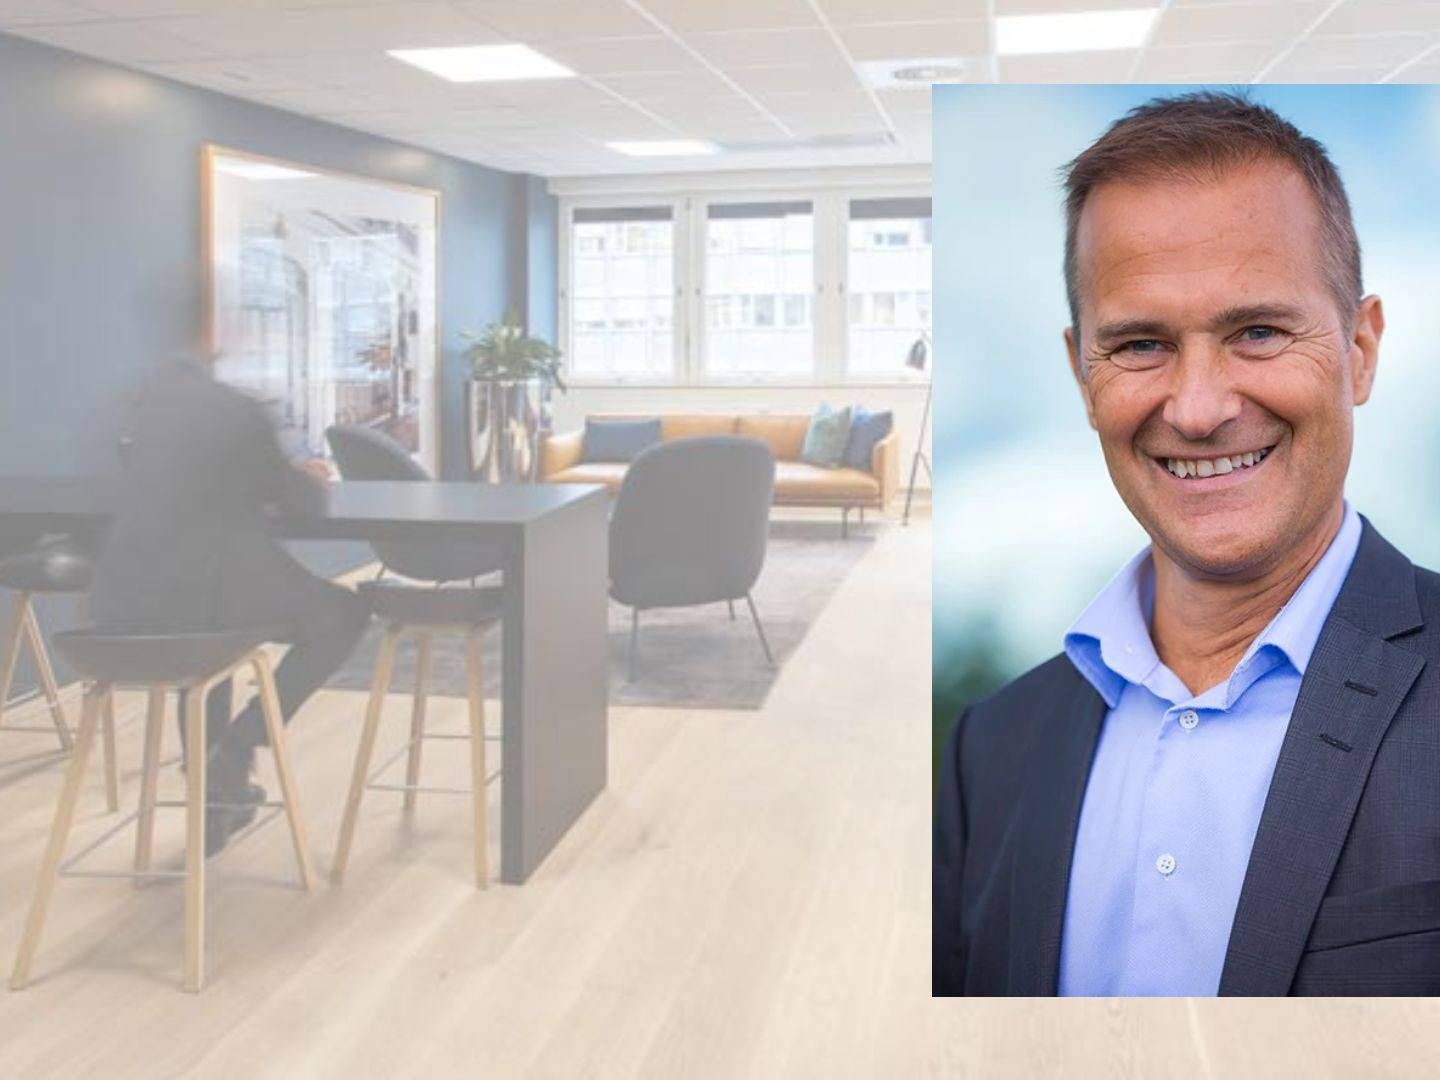 Agnar Nordeidet i Söderberg & Partners ønsker seg flere ansatte etter oppkjøpet av NOR foriskringsmegling. | Foto: Pressebilde